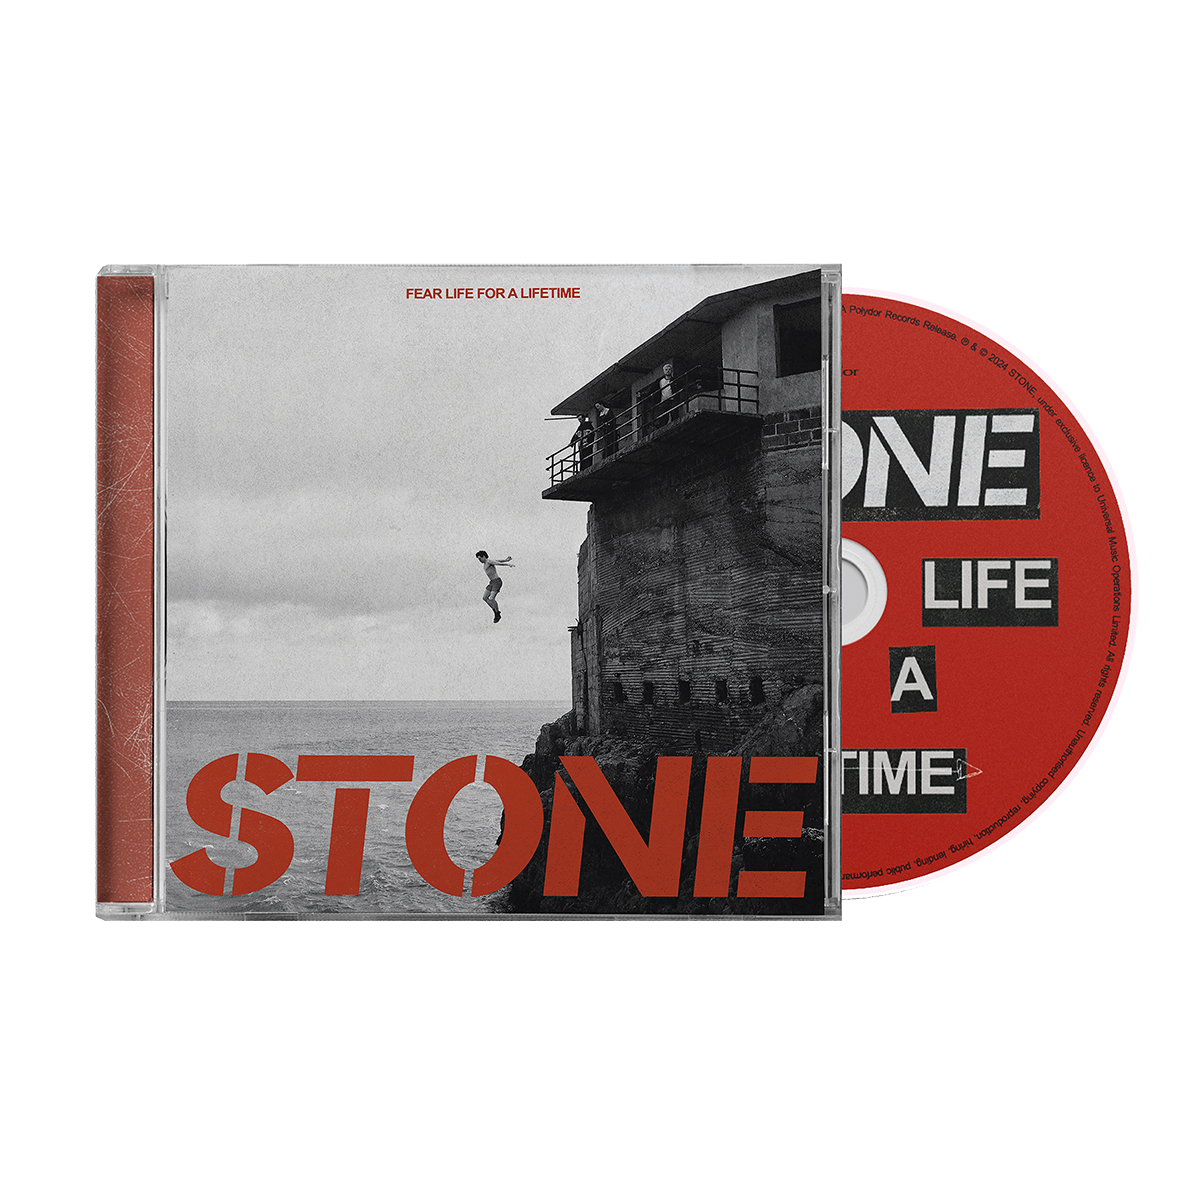 Fear Life For A Lifetime: White Vinyl LP, CD + Cassette